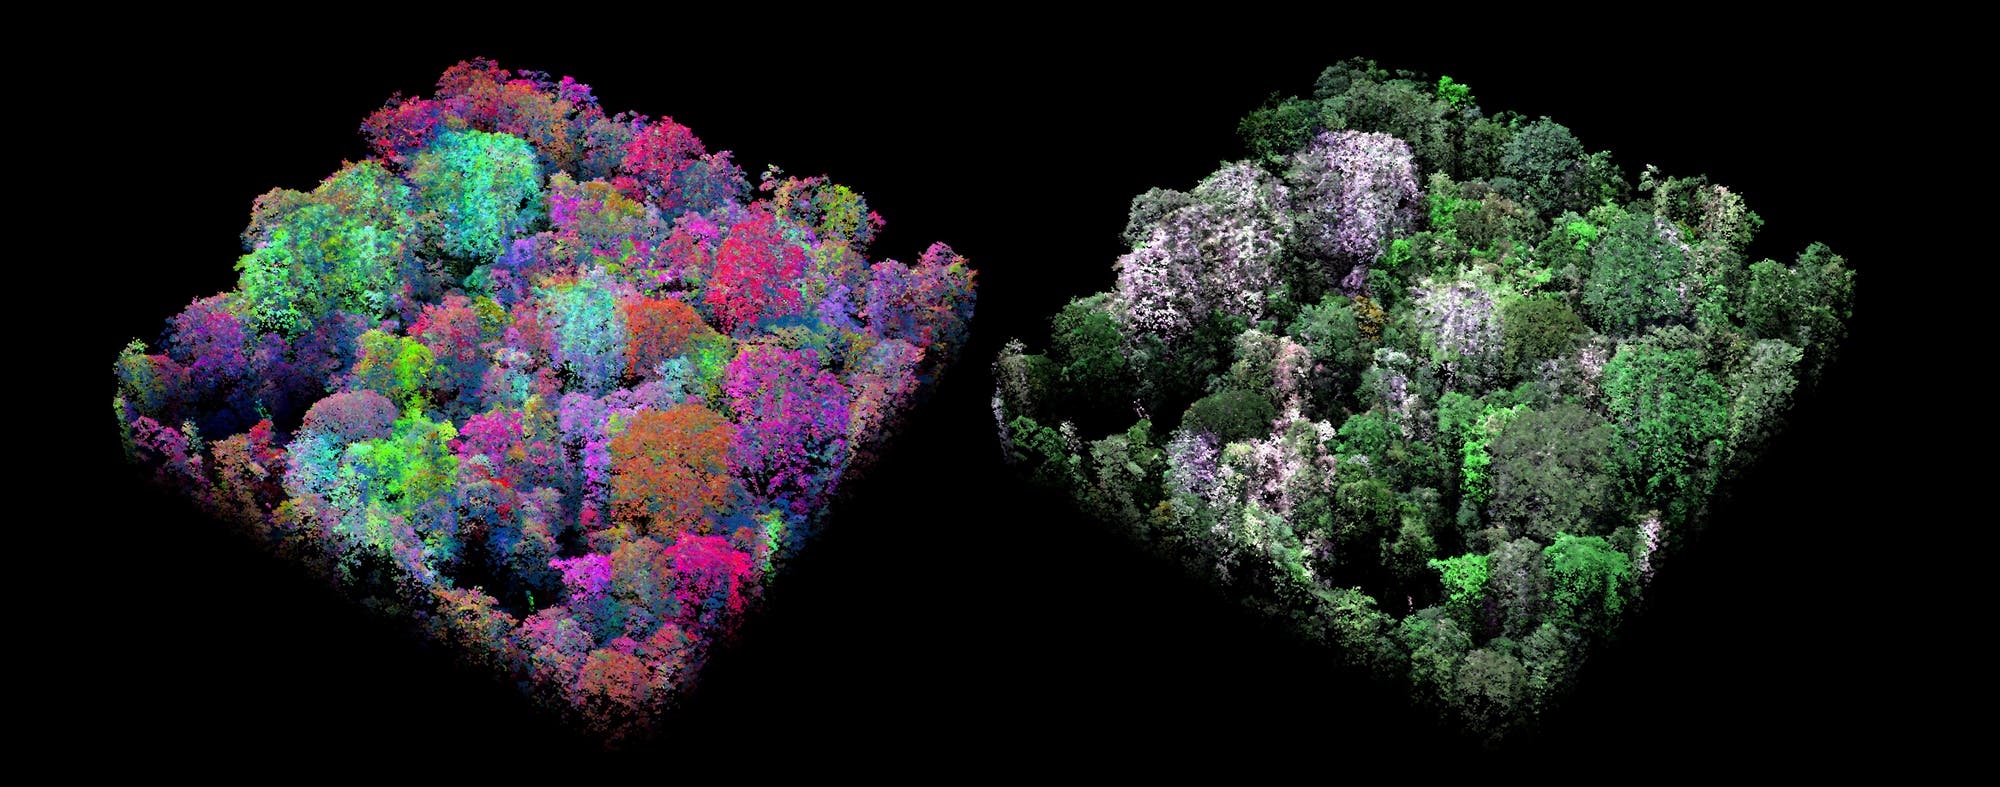 Zwei quadratische dreidimensionale Abbildungen des gleichen Stücks Wald nebeneinander. Die rechte ist überwiegend grün, die linke zeigt eine größere Farbenvielfalt mit verschiedenen Rot-, Grün-, Blau- und Violetttönen.